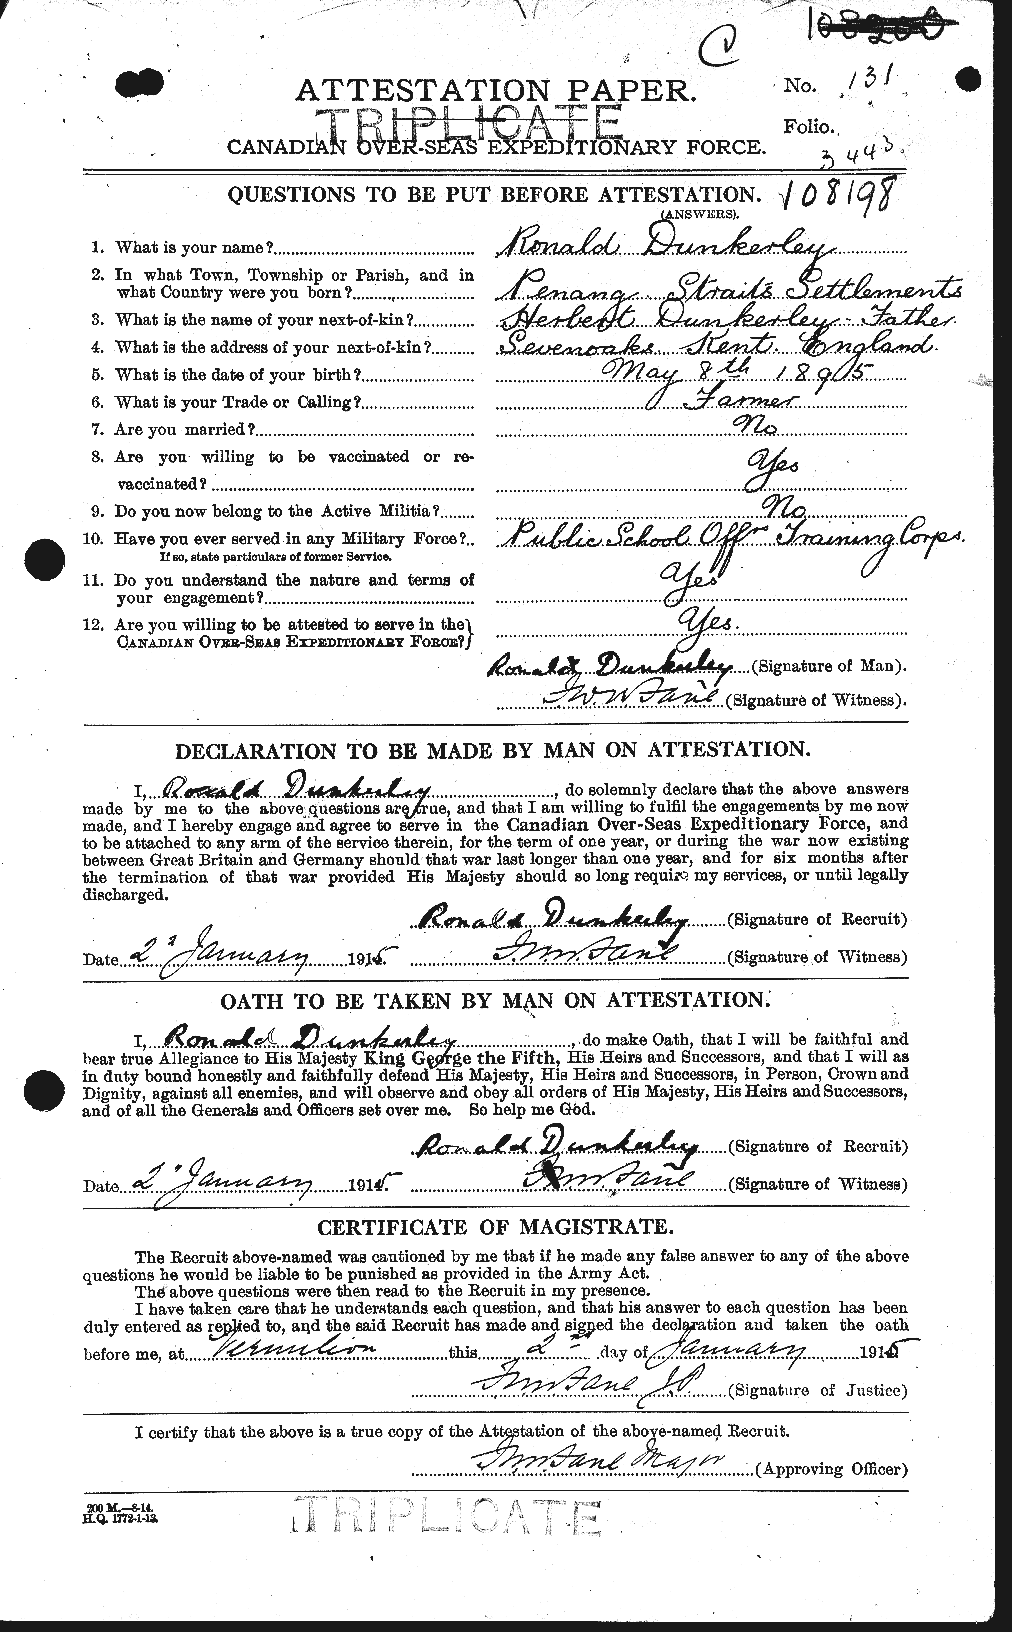 Dossiers du Personnel de la Première Guerre mondiale - CEC 303640a